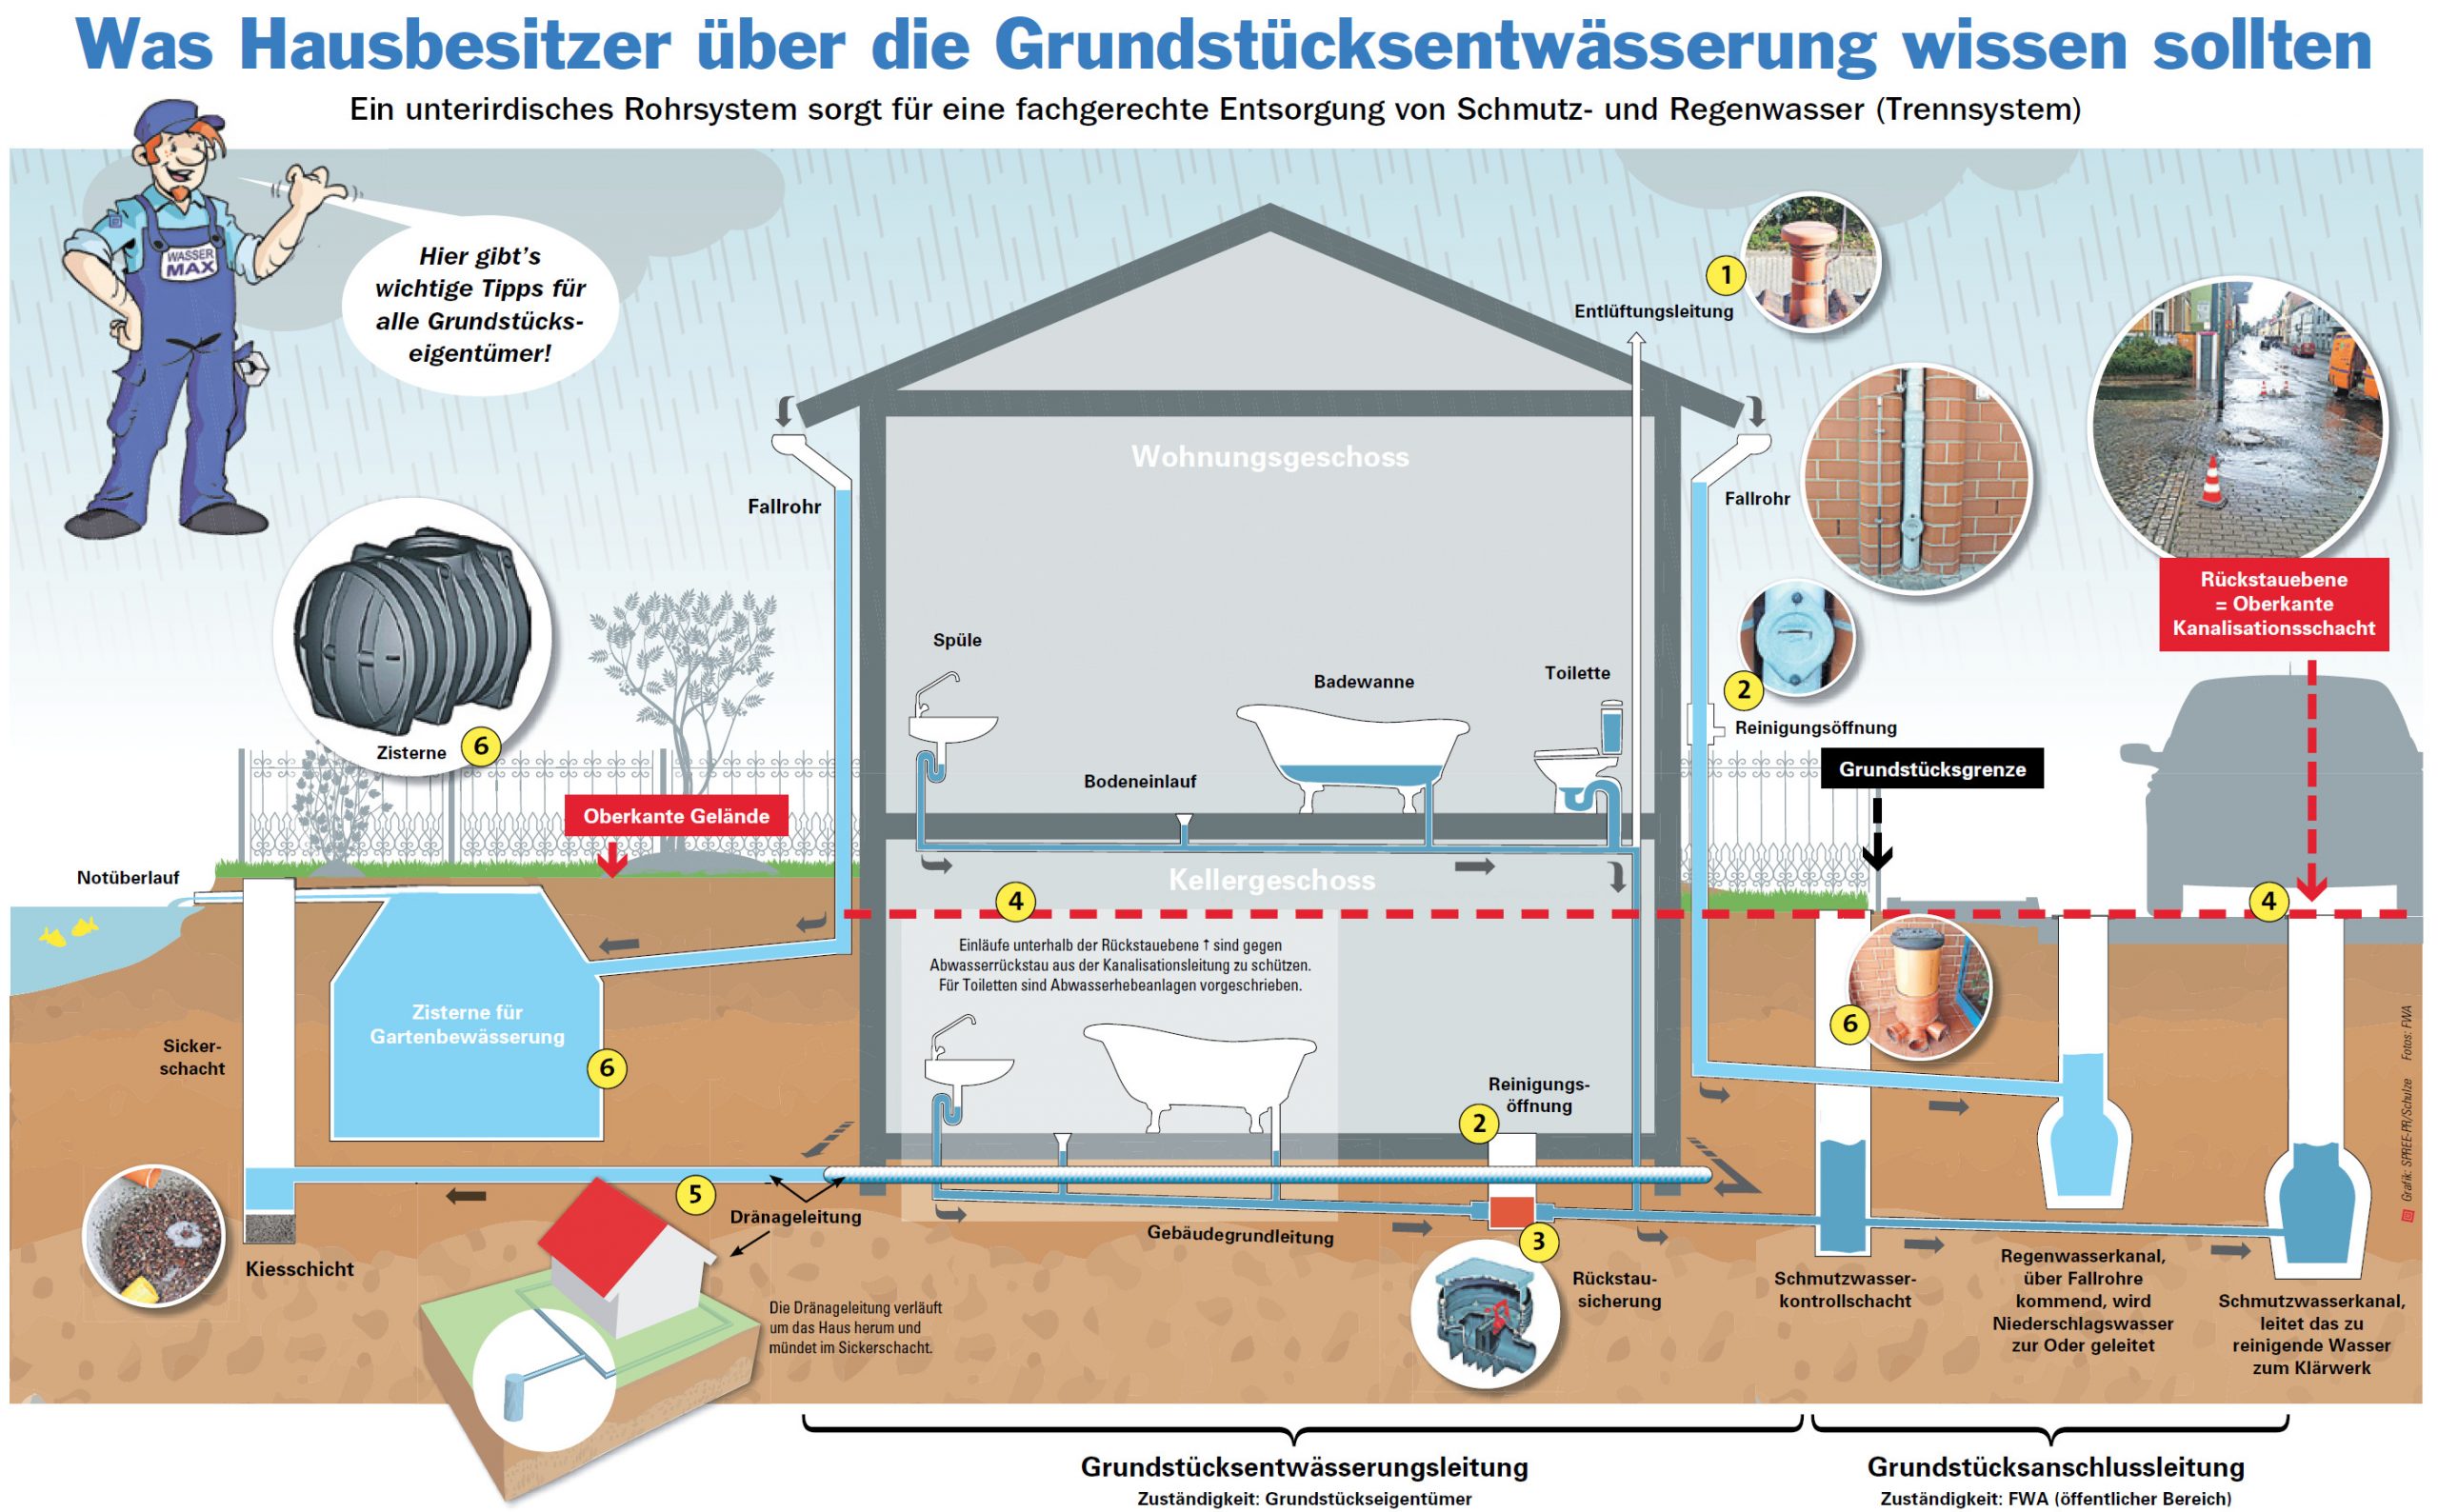 FWA Frankfurter Wasser- und Abwassergesellschaft mbHGrundstücksentwässerung  - FWA Frankfurter Wasser- und Abwassergesellschaft mbH